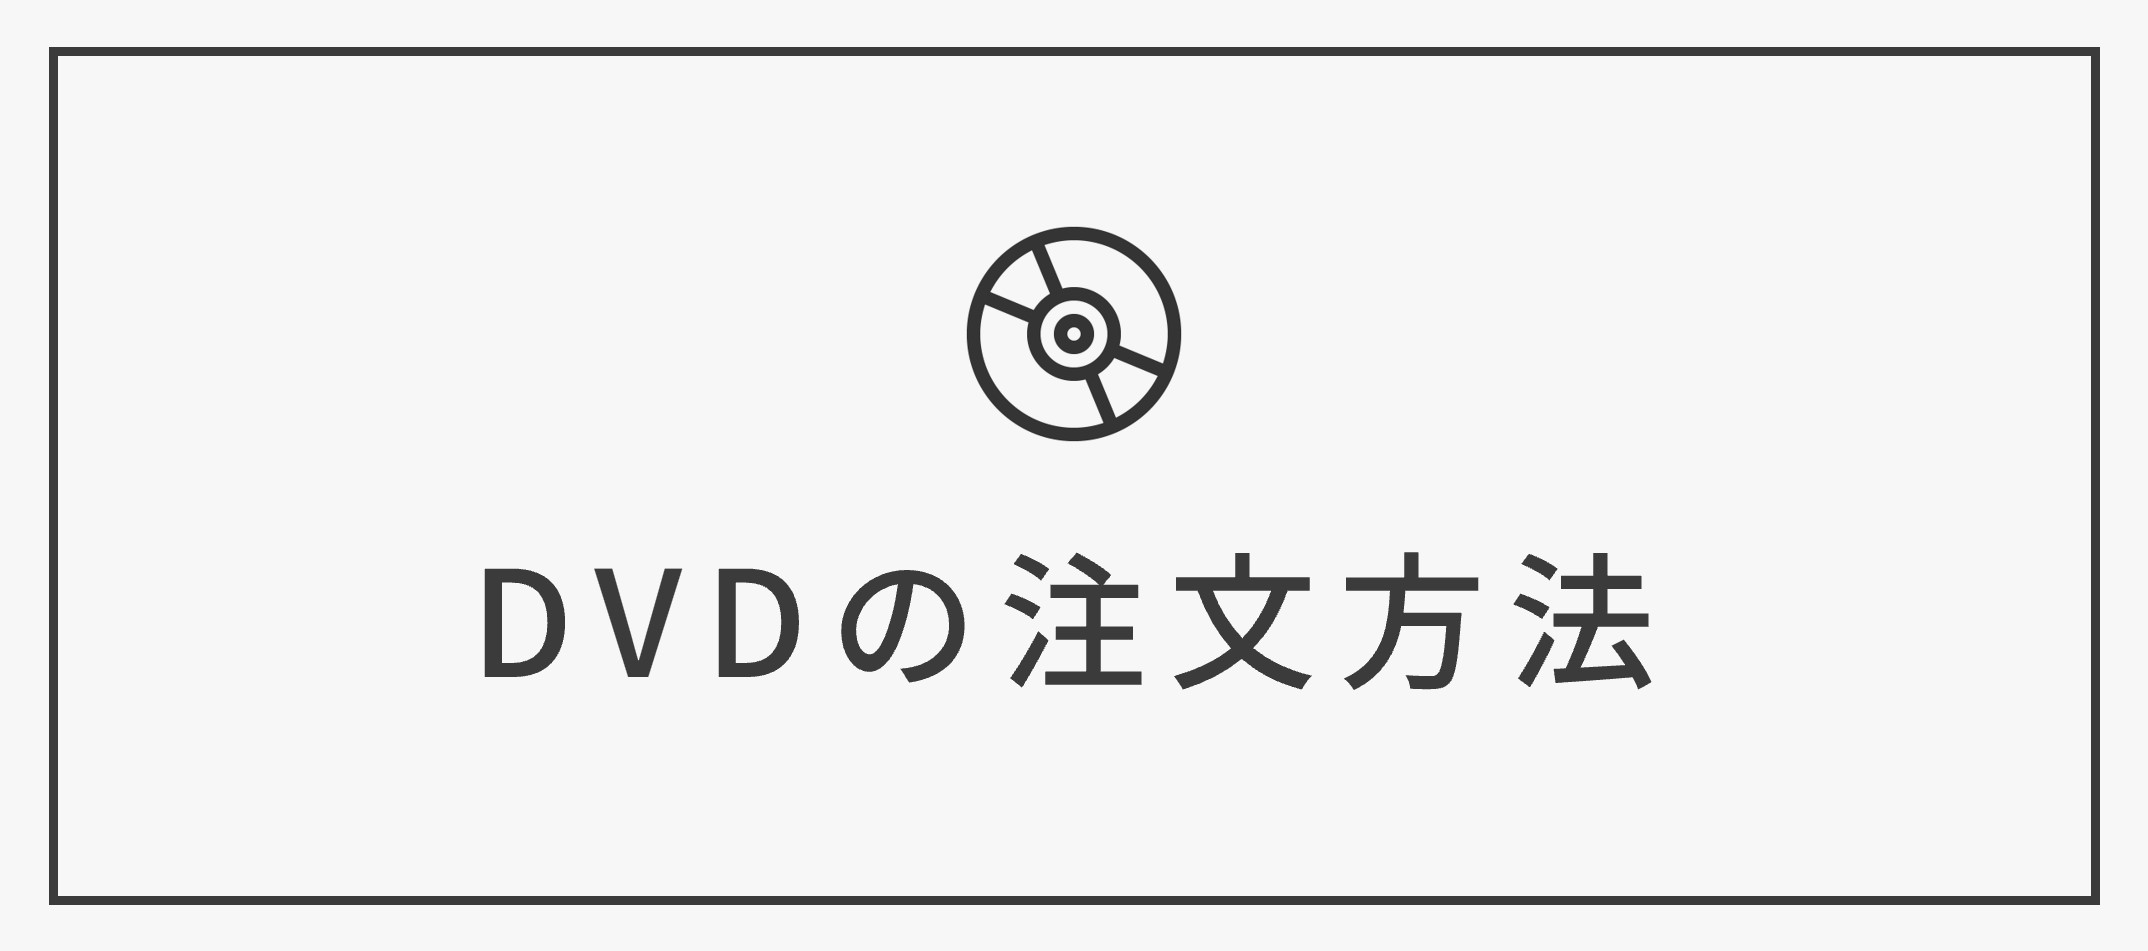 【DVD化】注文方法